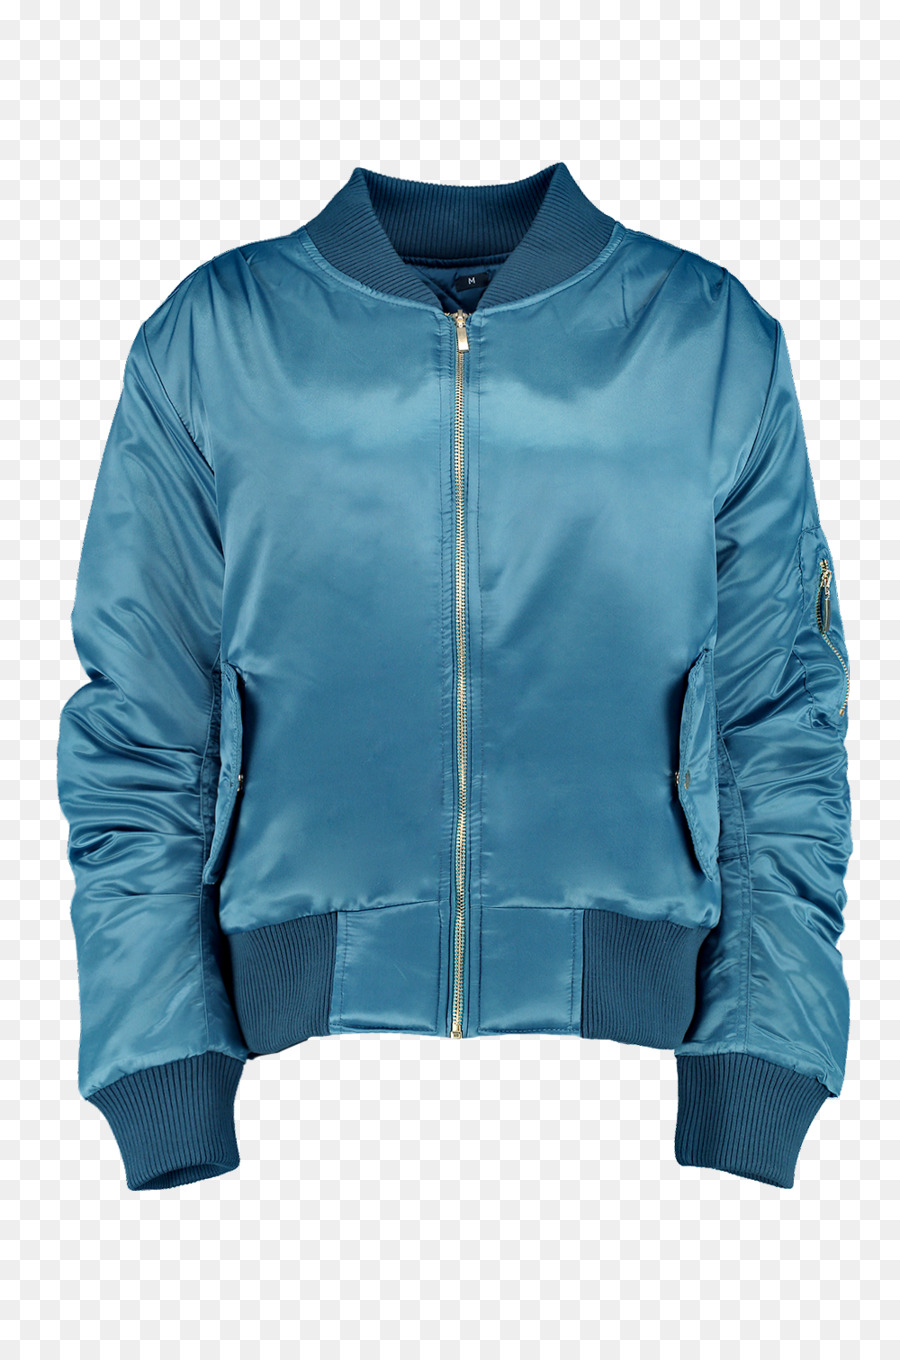 Jacke aus Polar fleece Bluza Ärmel Oberbekleidung - Jacke